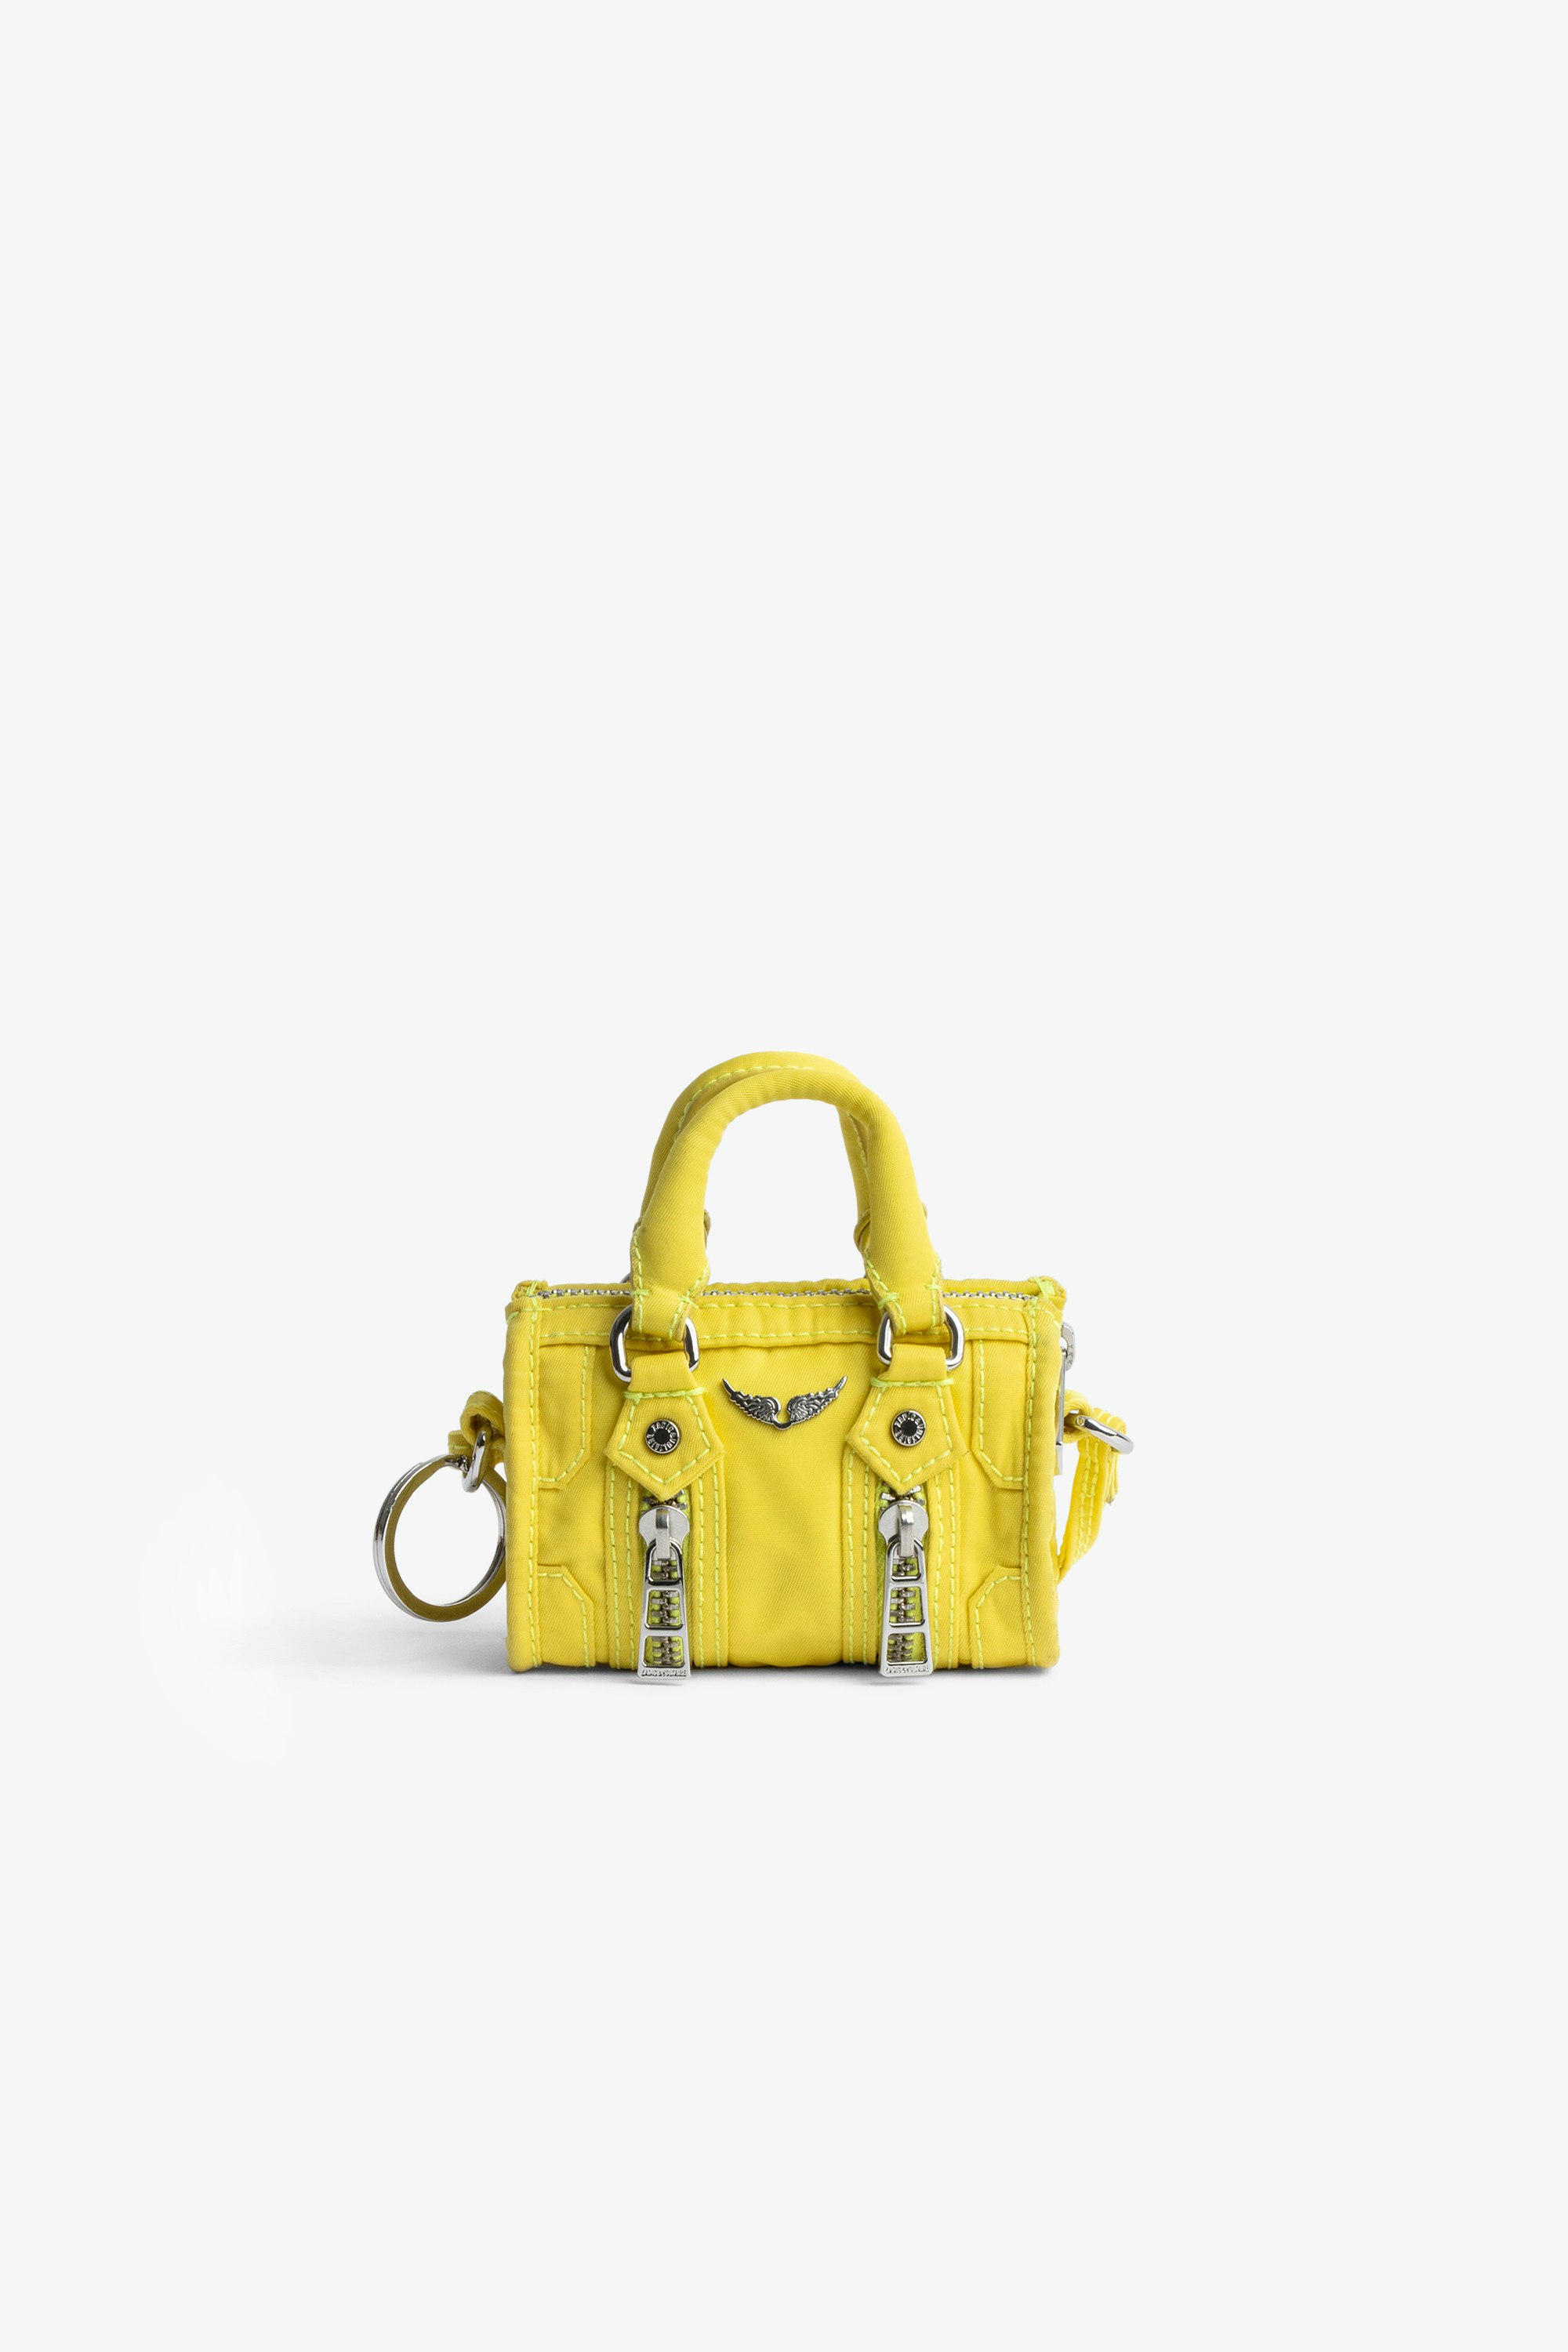 Grigri-Tasche Sunny #2 Grigri-Schlüsselanhänger in der Form der Damentasche Sunny aus gelbem Leder